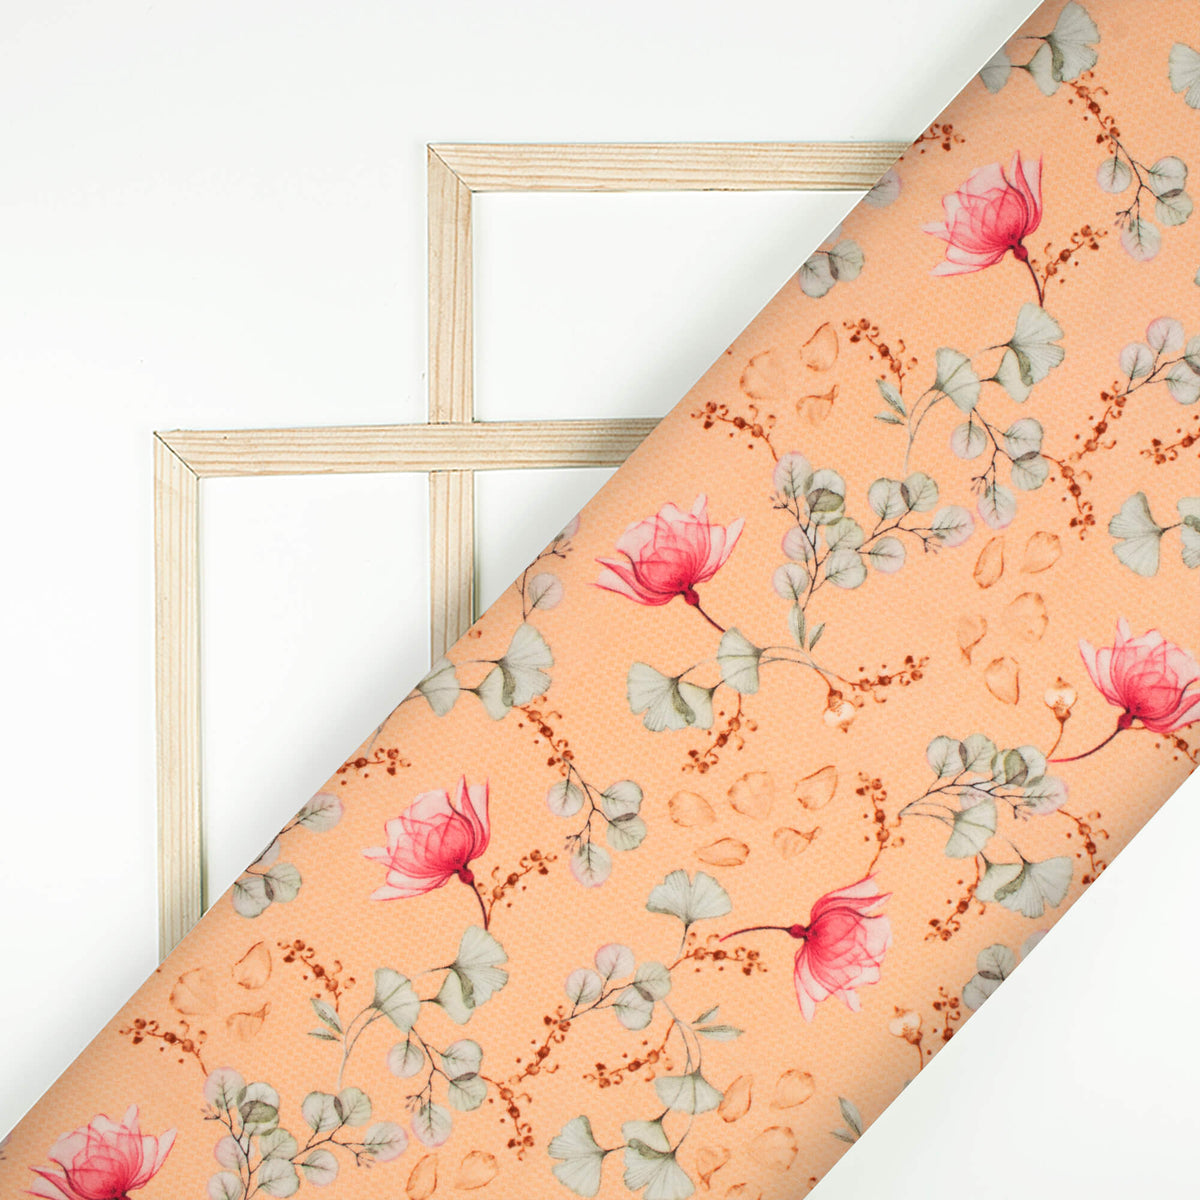 Pale Orange And Pink Floral Digital Print Viscose Natural Crepe Fabric